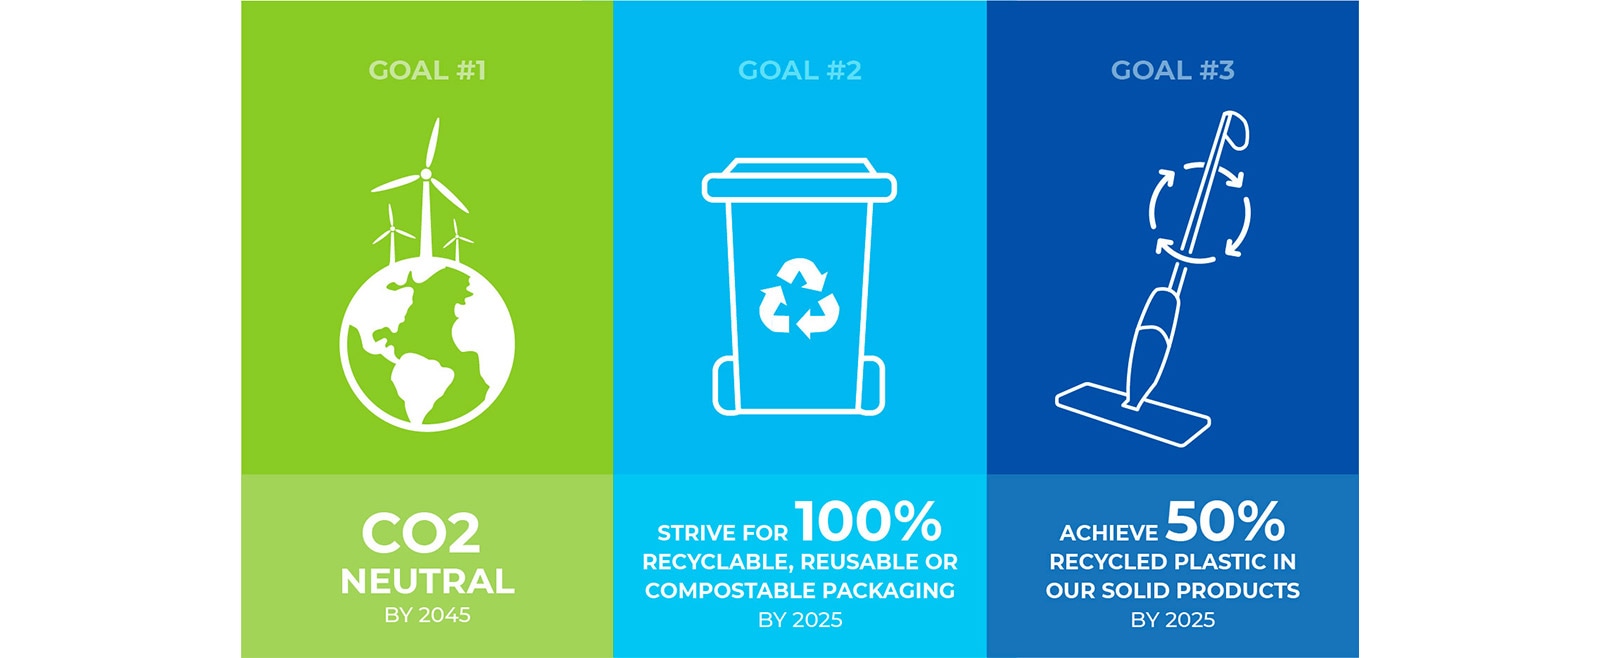 US_sustainability_Infographic_goals_image.jpg